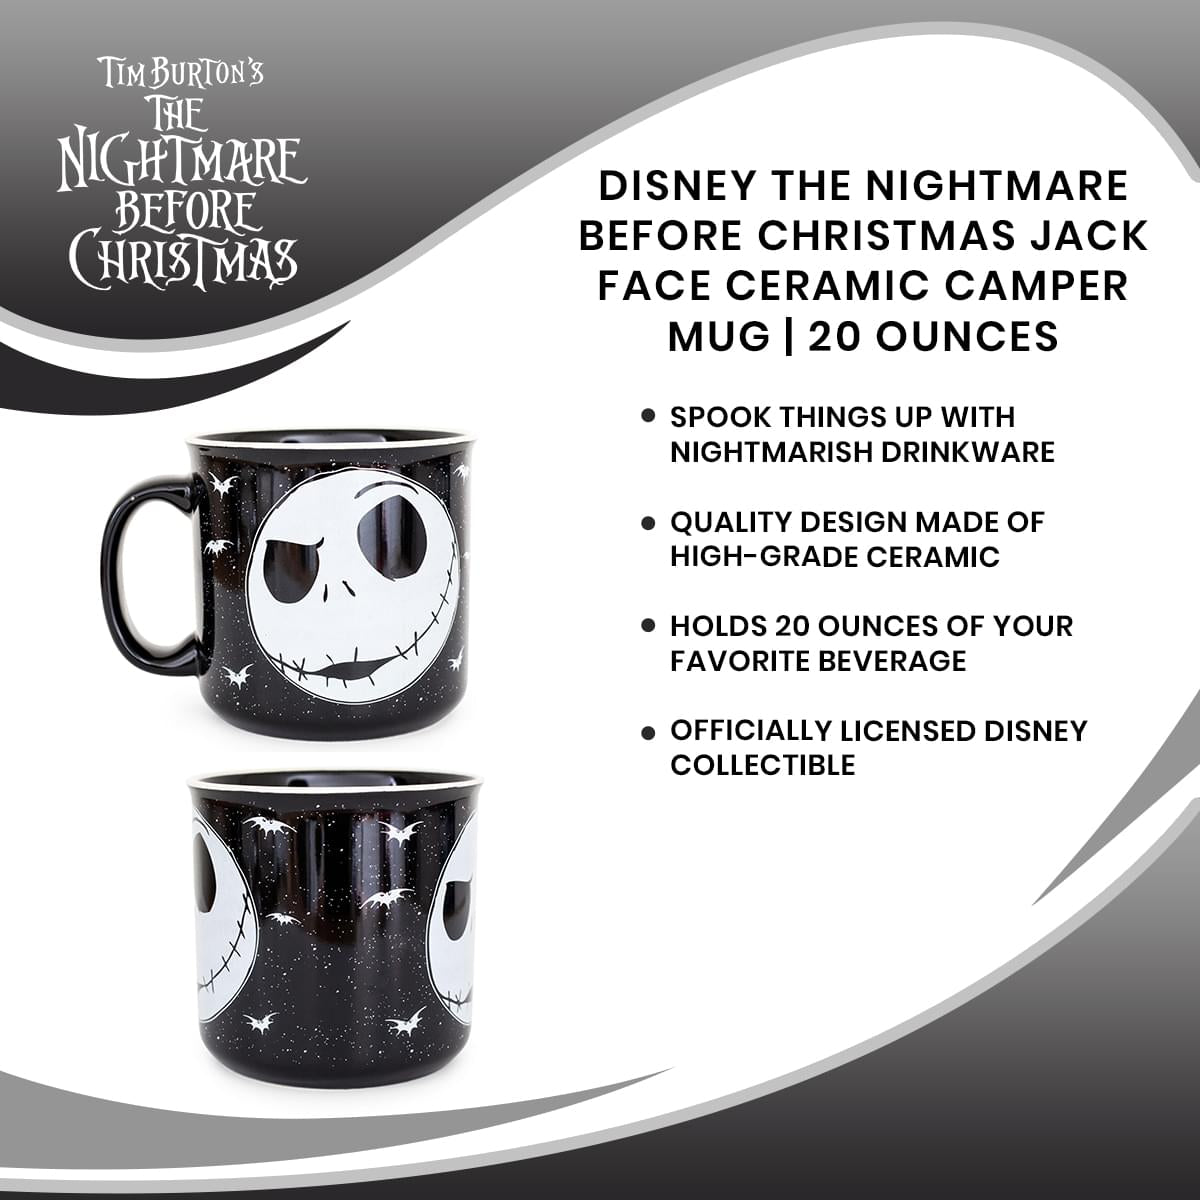 Disney The Nightmare Before Christmas Jack Face Ceramic Camper Mug | 20 Ounces